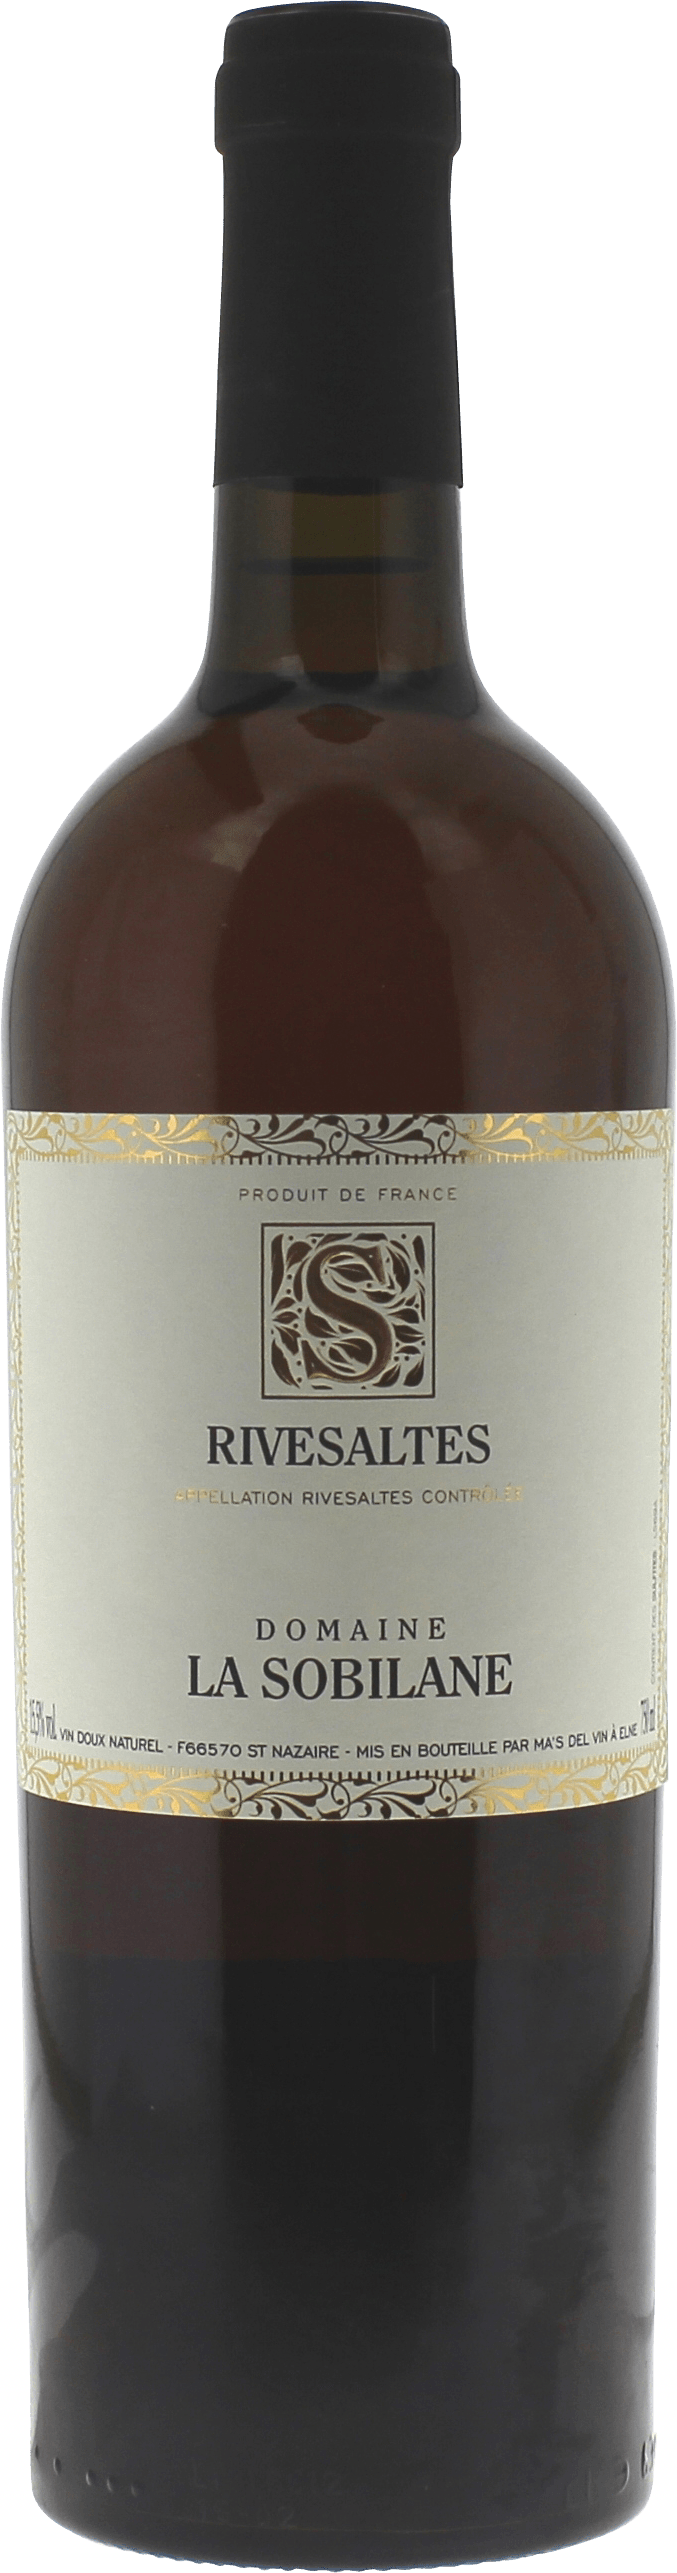 Rivesaltes domaine la sobilane 1968 Vin doux naturel Rivesaltes, Vin doux naturel